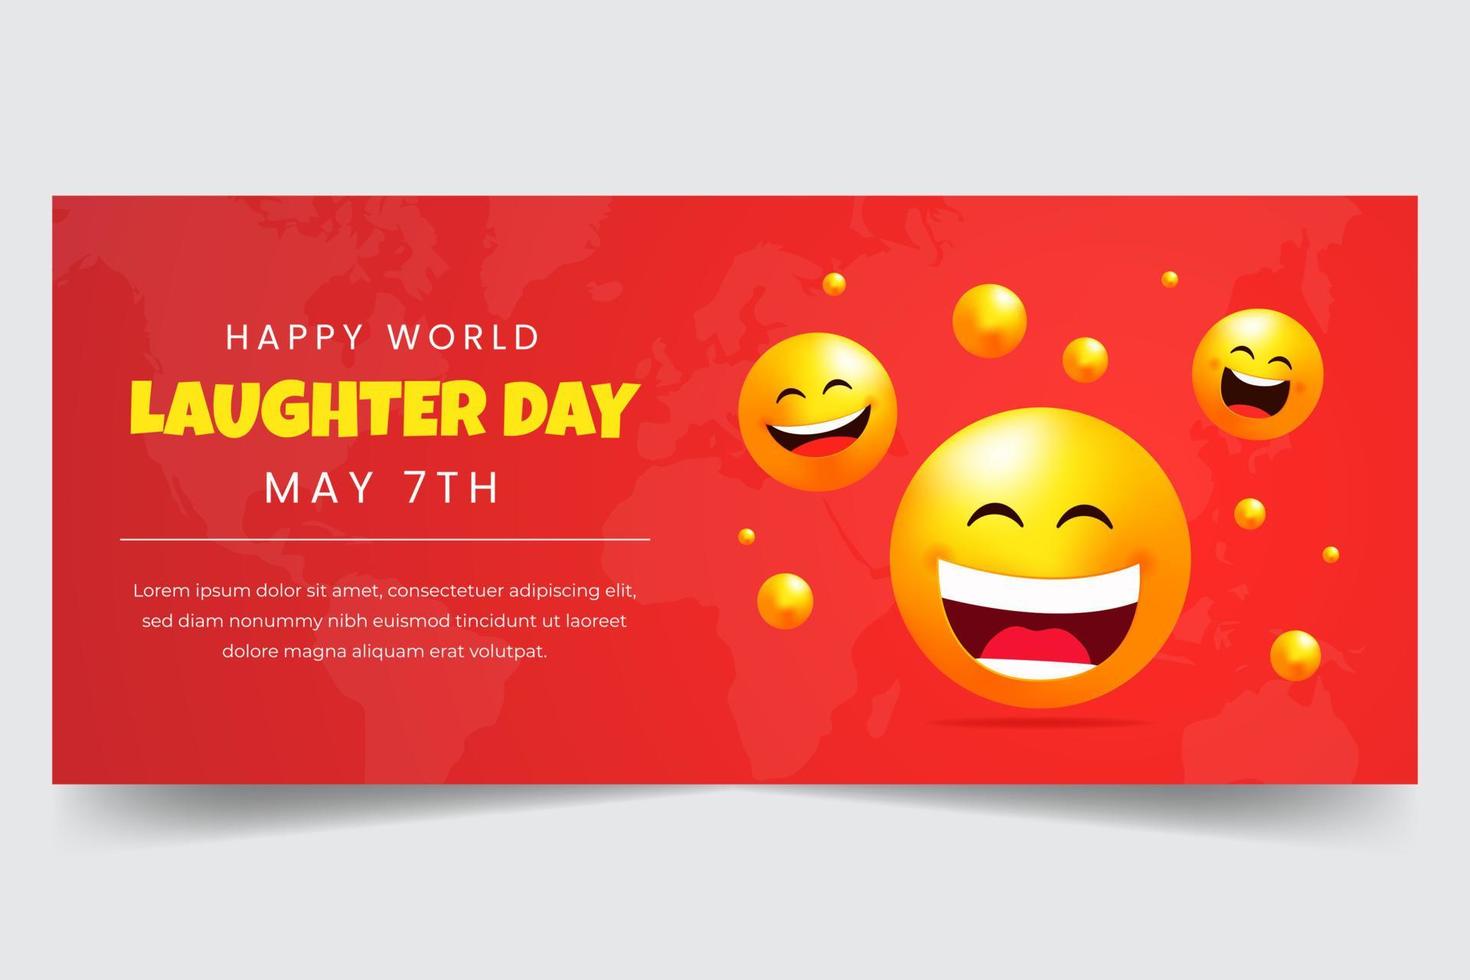 contento mundo la risa día mayo 7mo horizontal bandera con emoticones ilustración vector